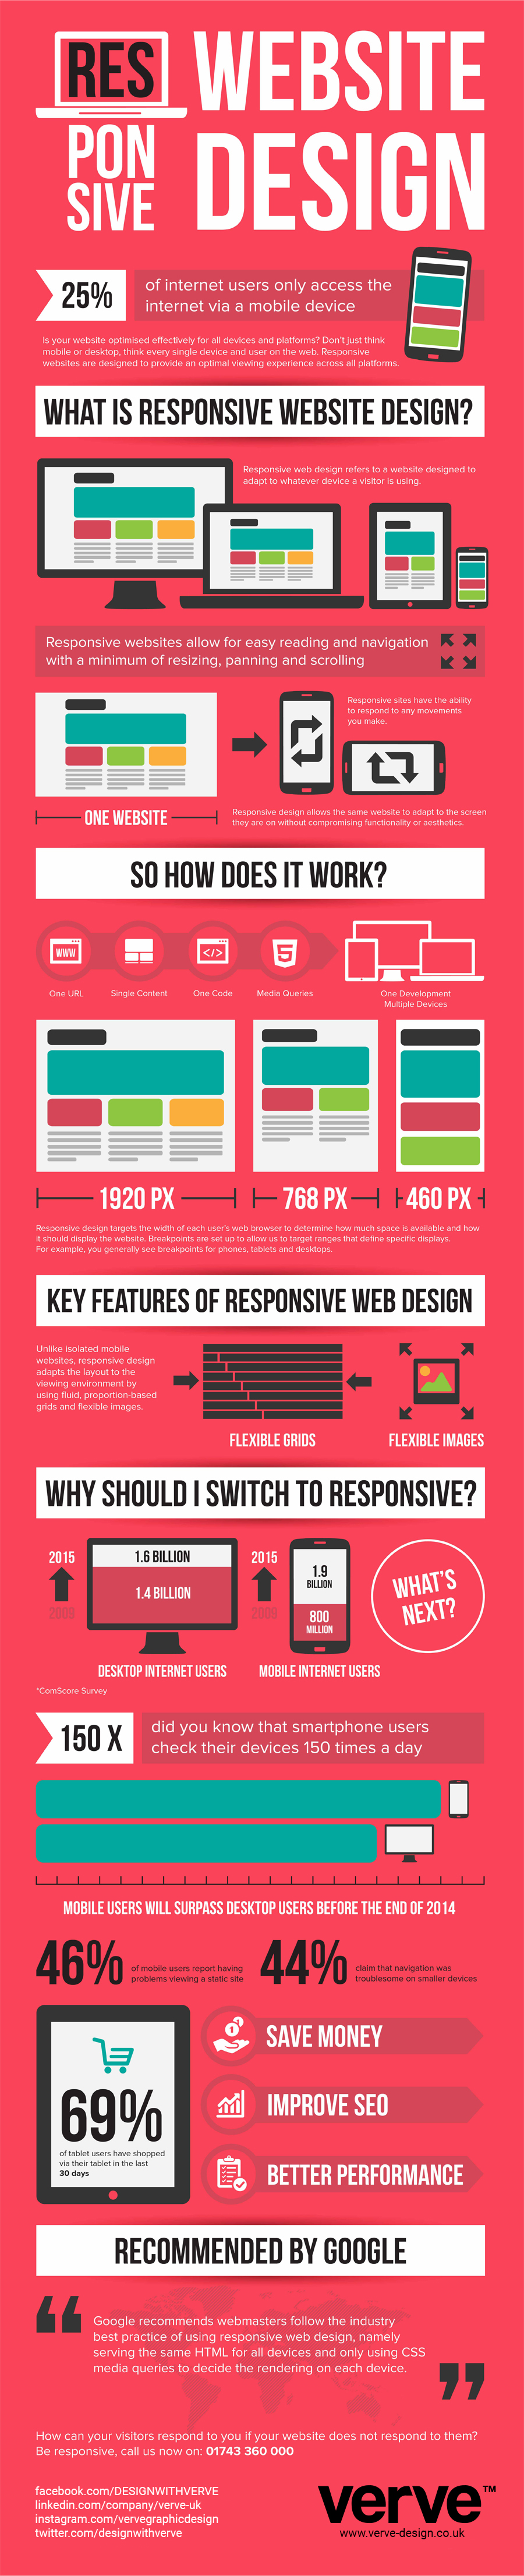 What is responsive website design